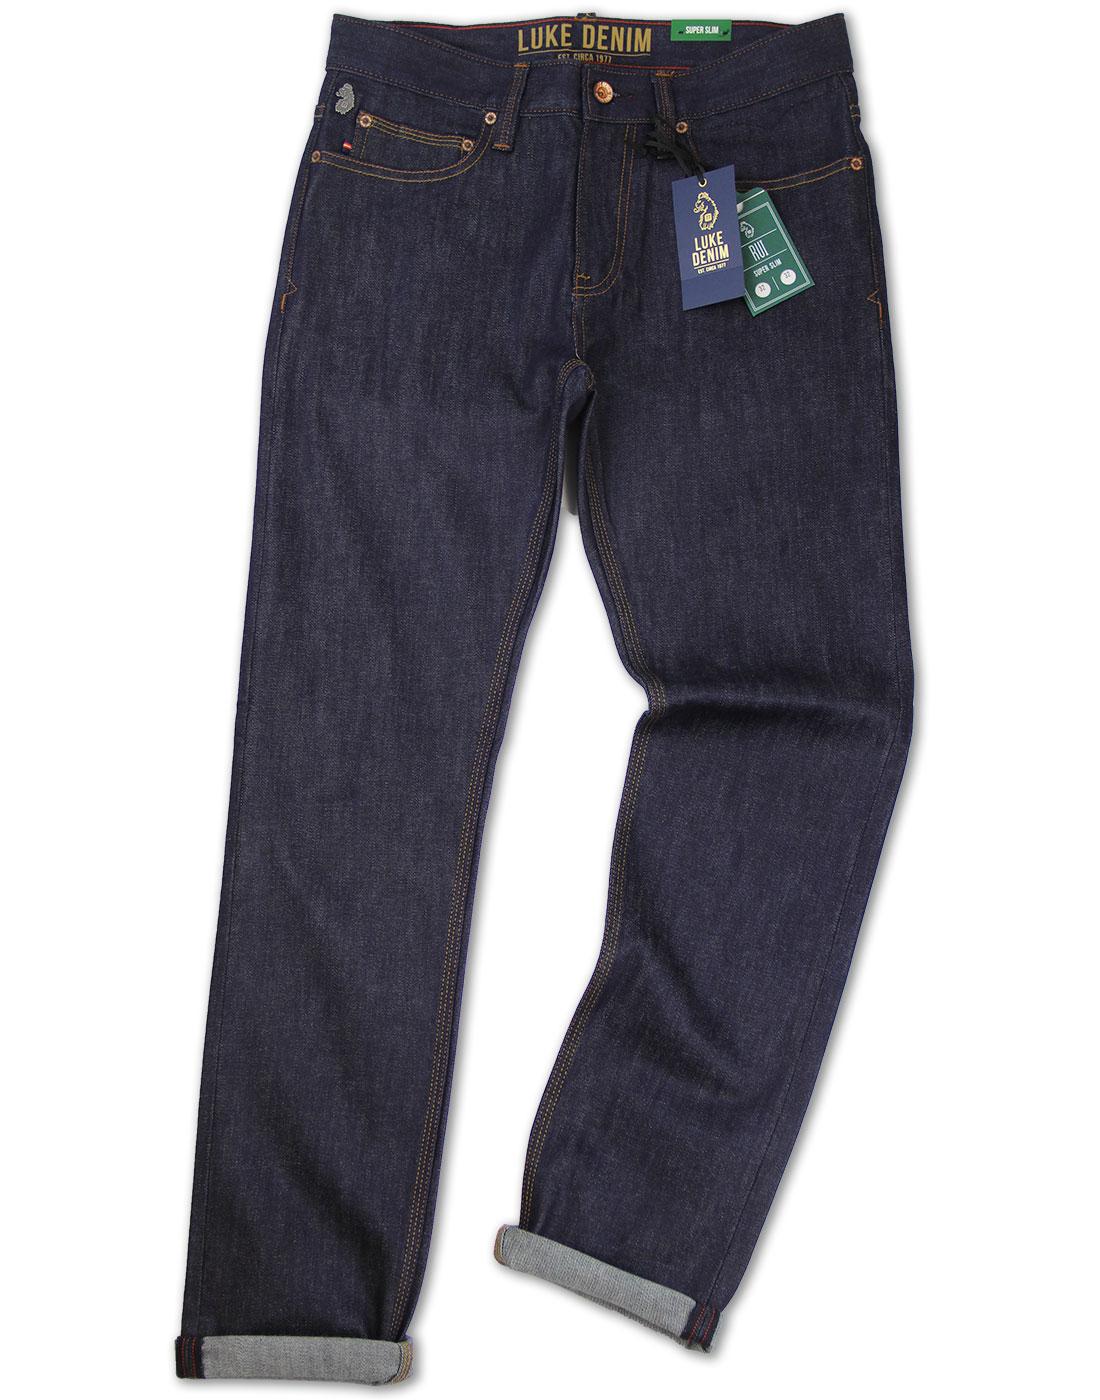 luke 1977 jeans sale